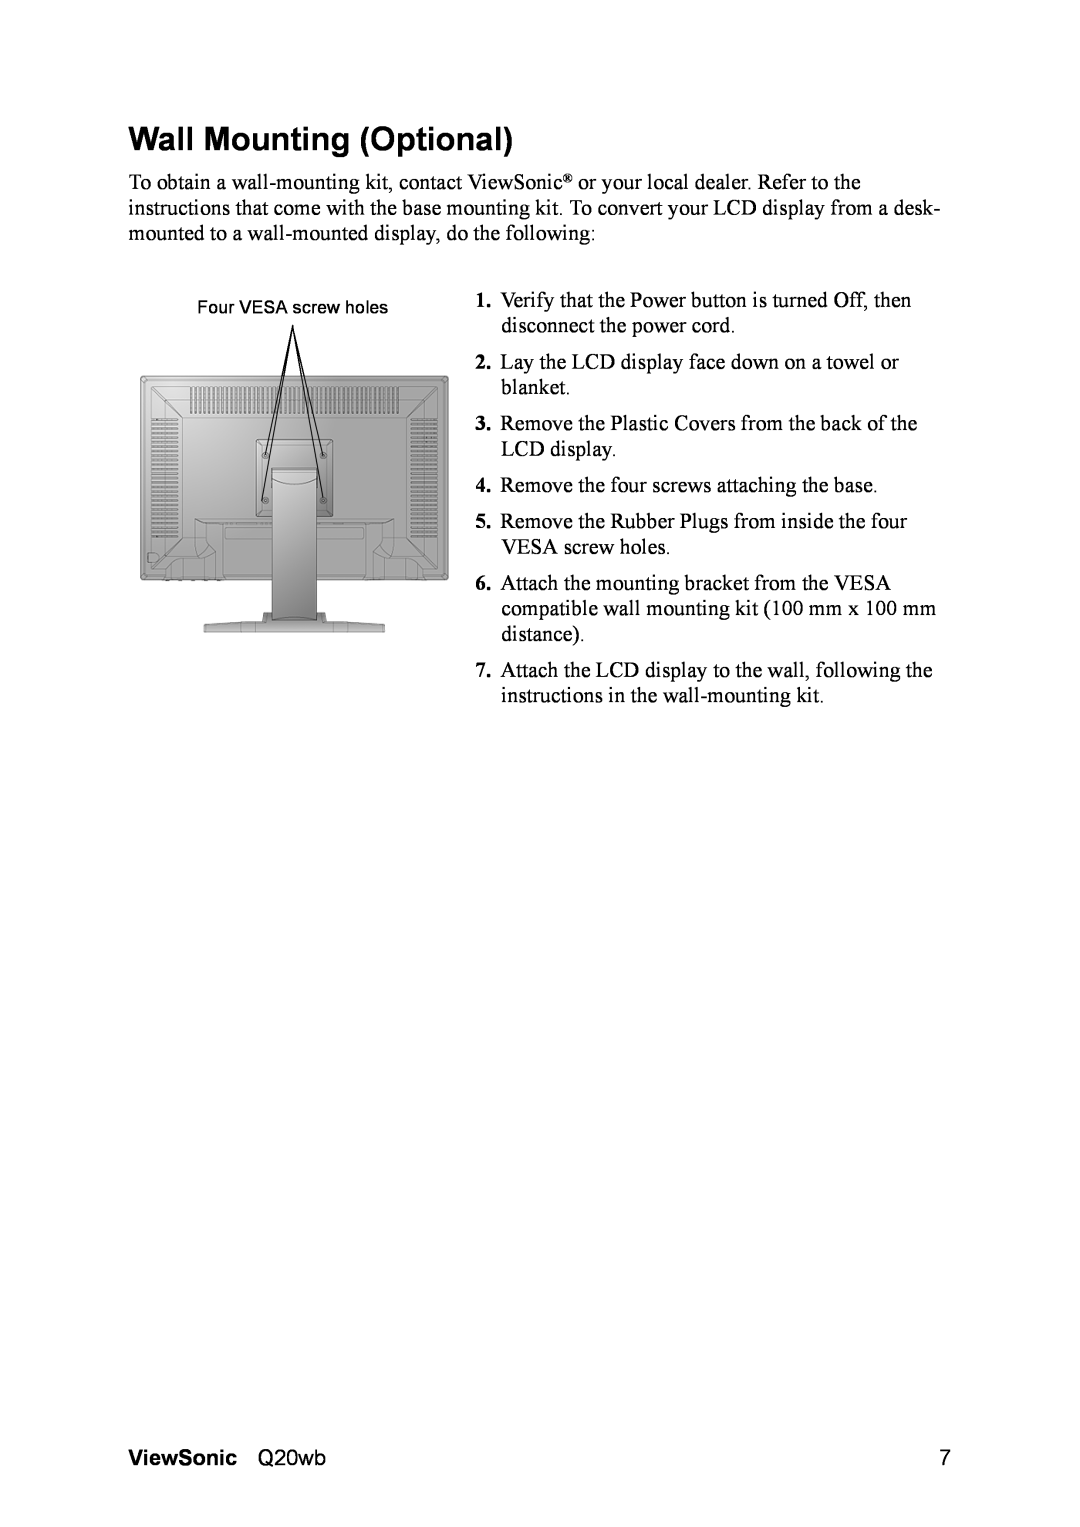 ViewSonic VS11674, Q20WB manual Wall Mounting Optional, ViewSonic Q20wb 